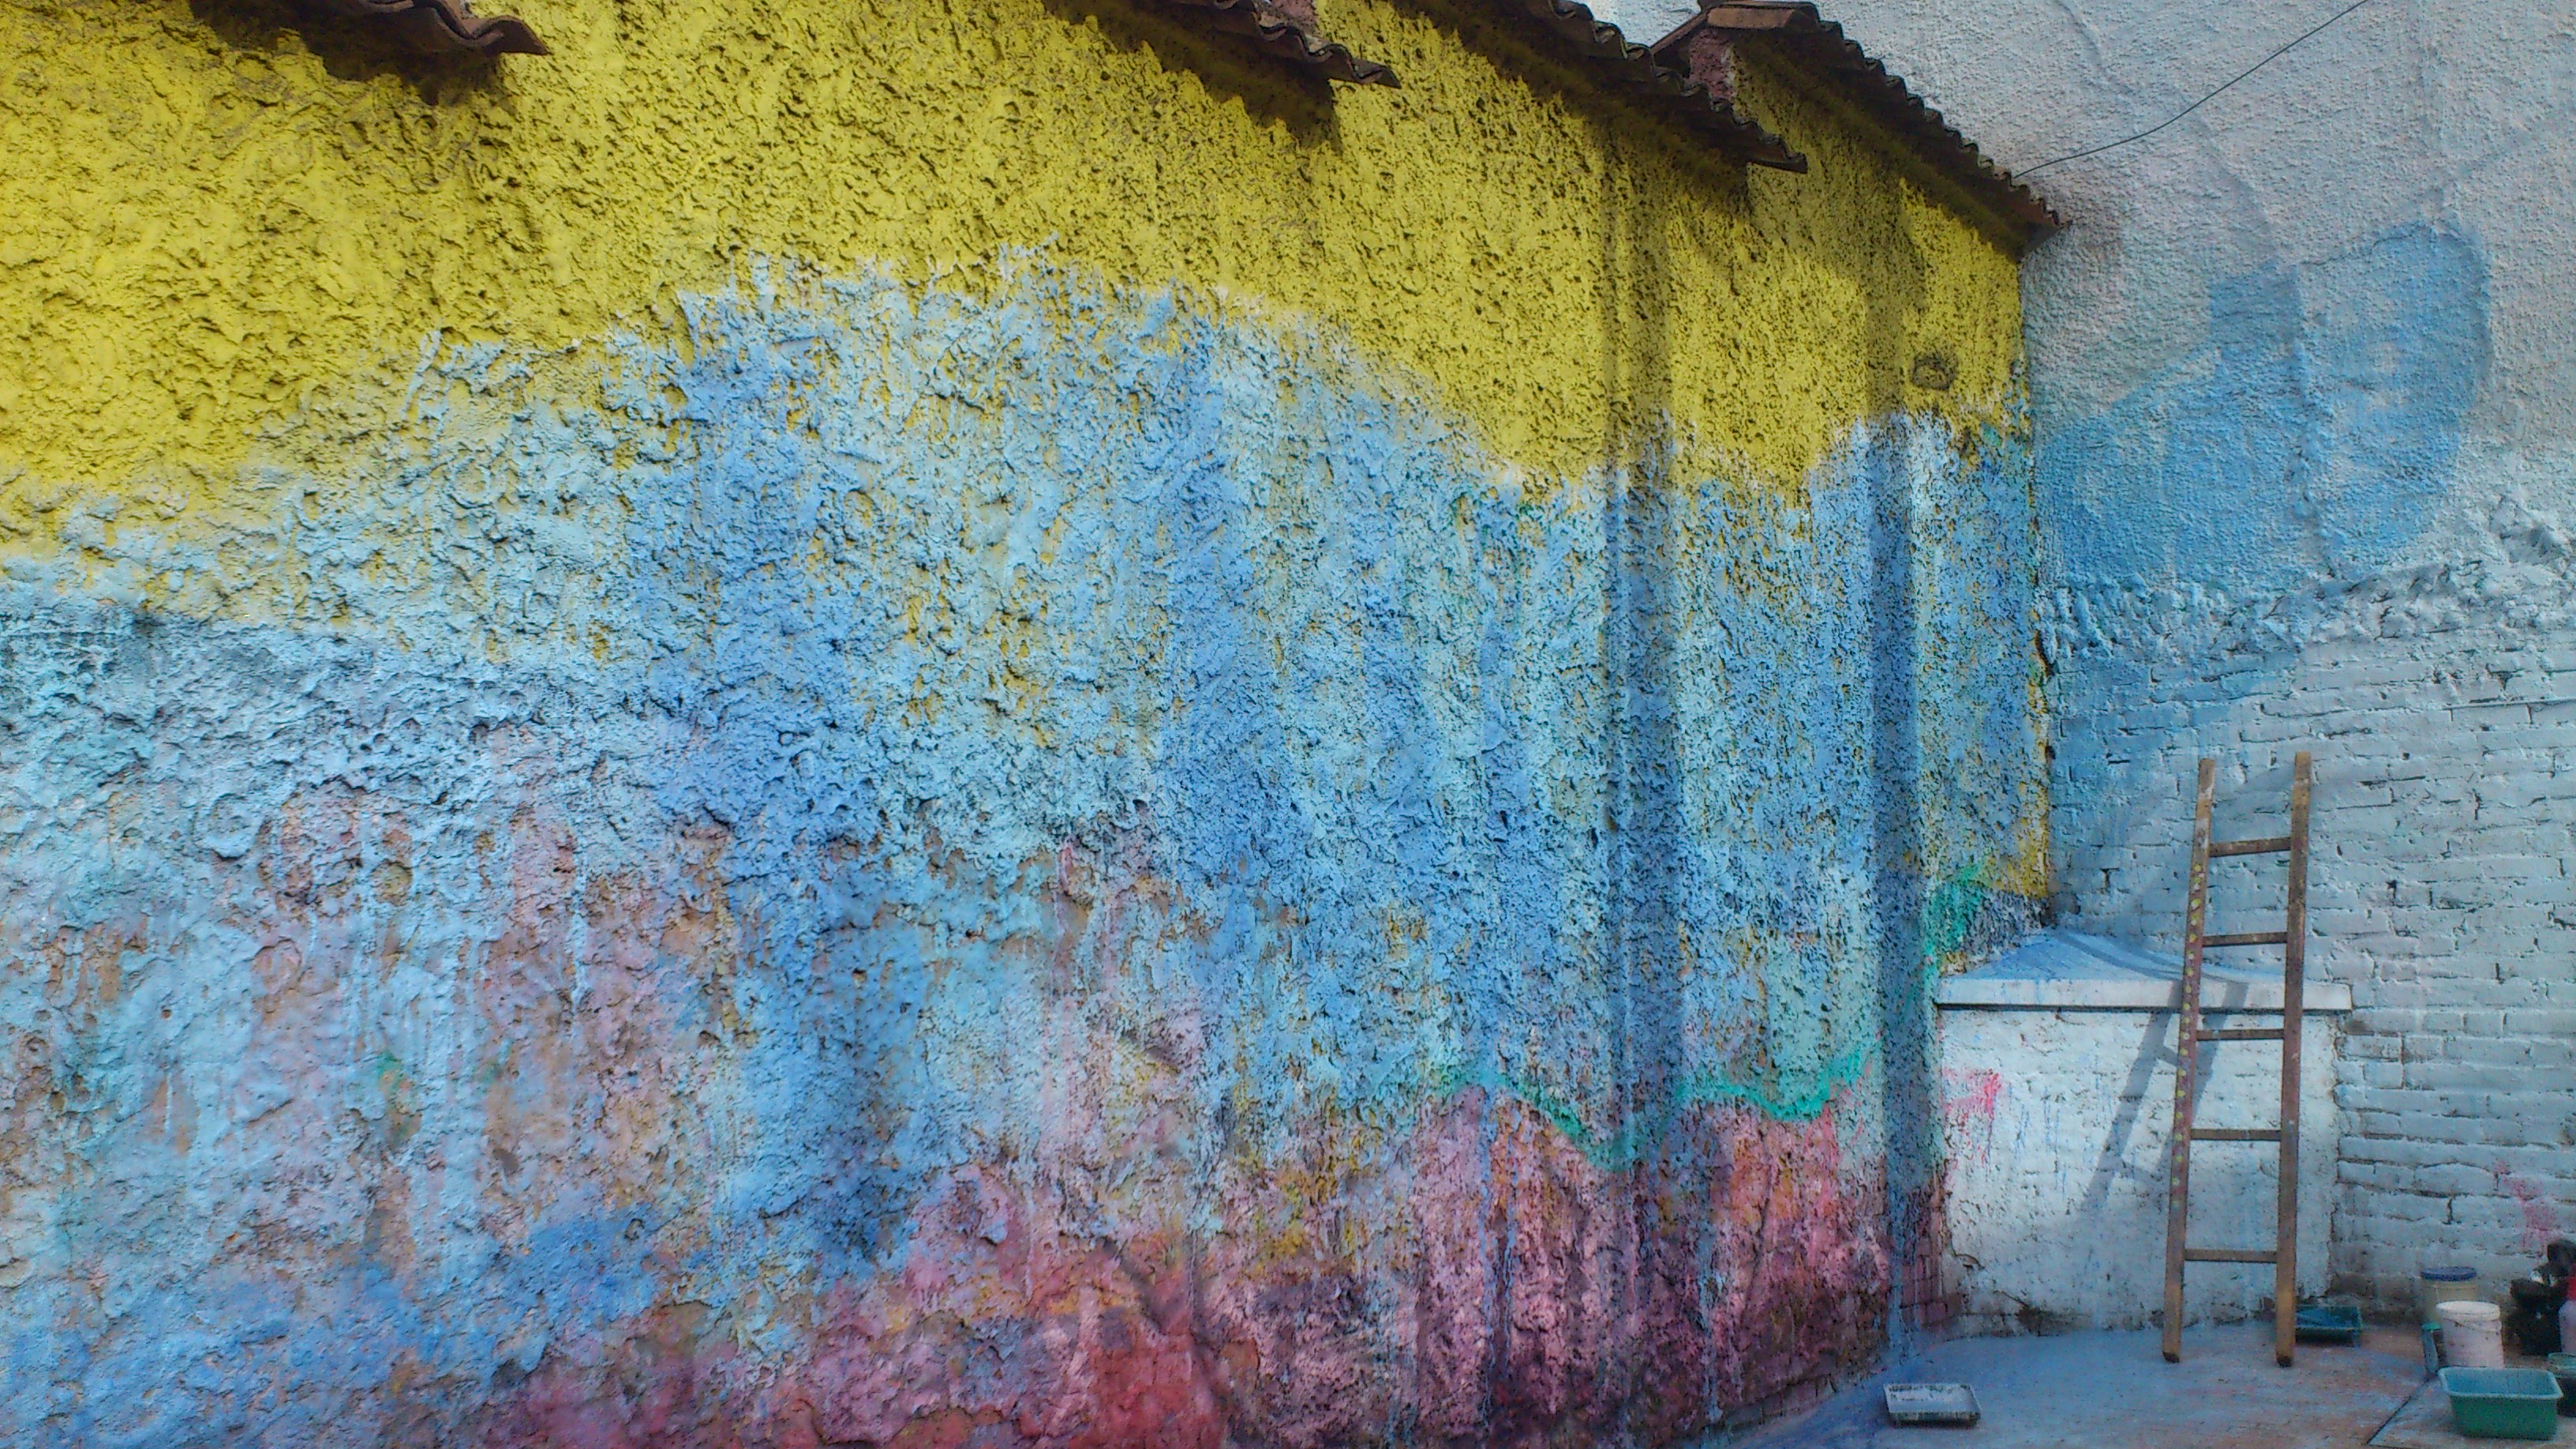 Depression in Sachen Orientierung dargestellt mit der unvollendet gestrichenen Wand in den Farben gelb, blau und rot